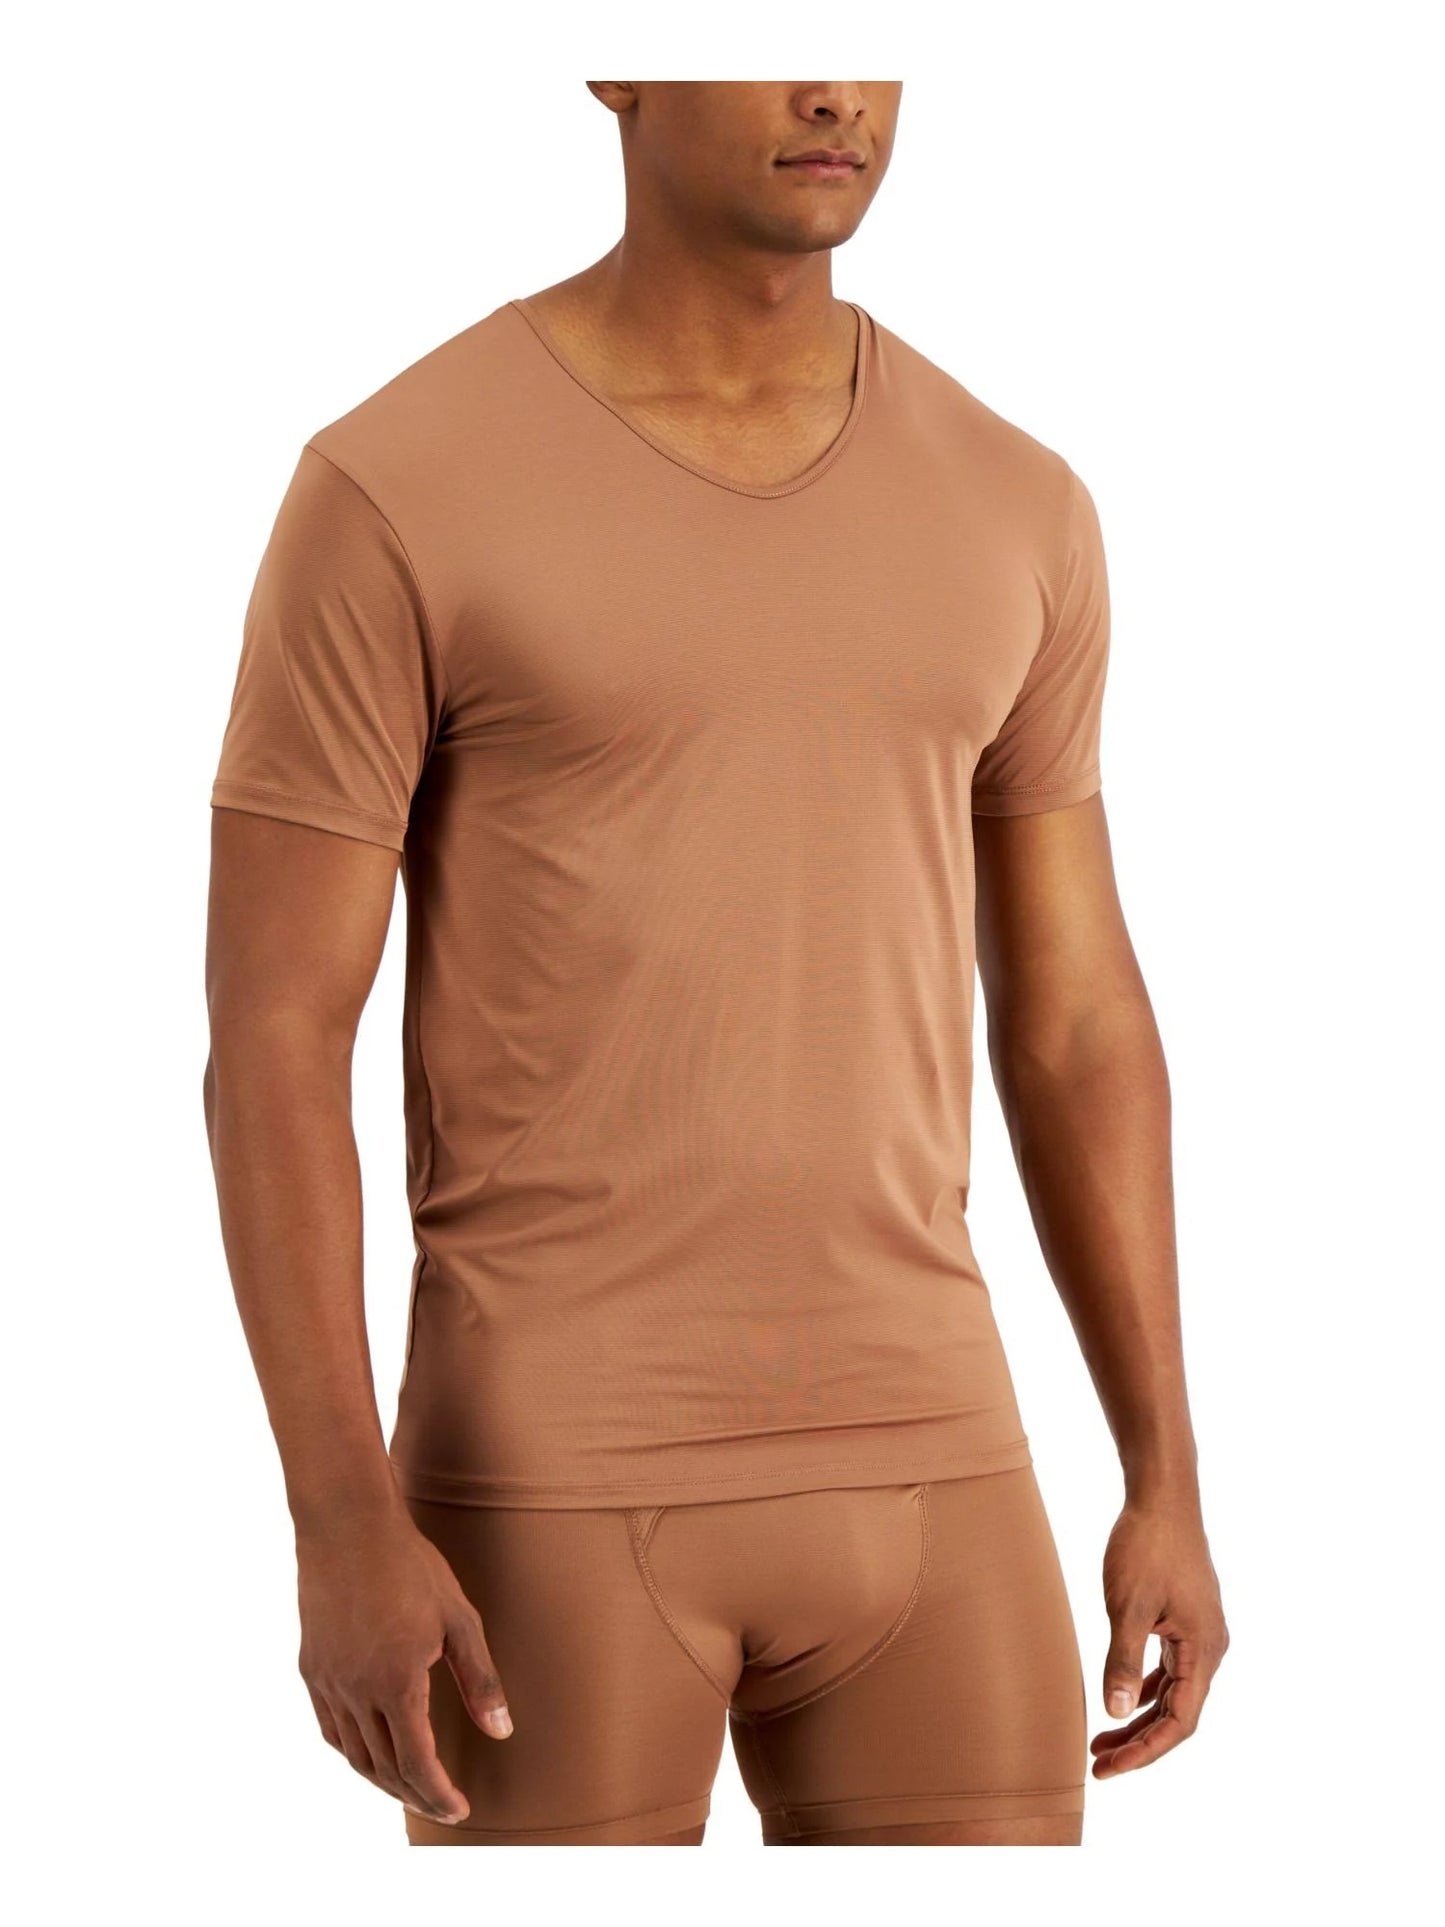 ALFANI Men's Air Mesh Undershirt  Color Brown Size M